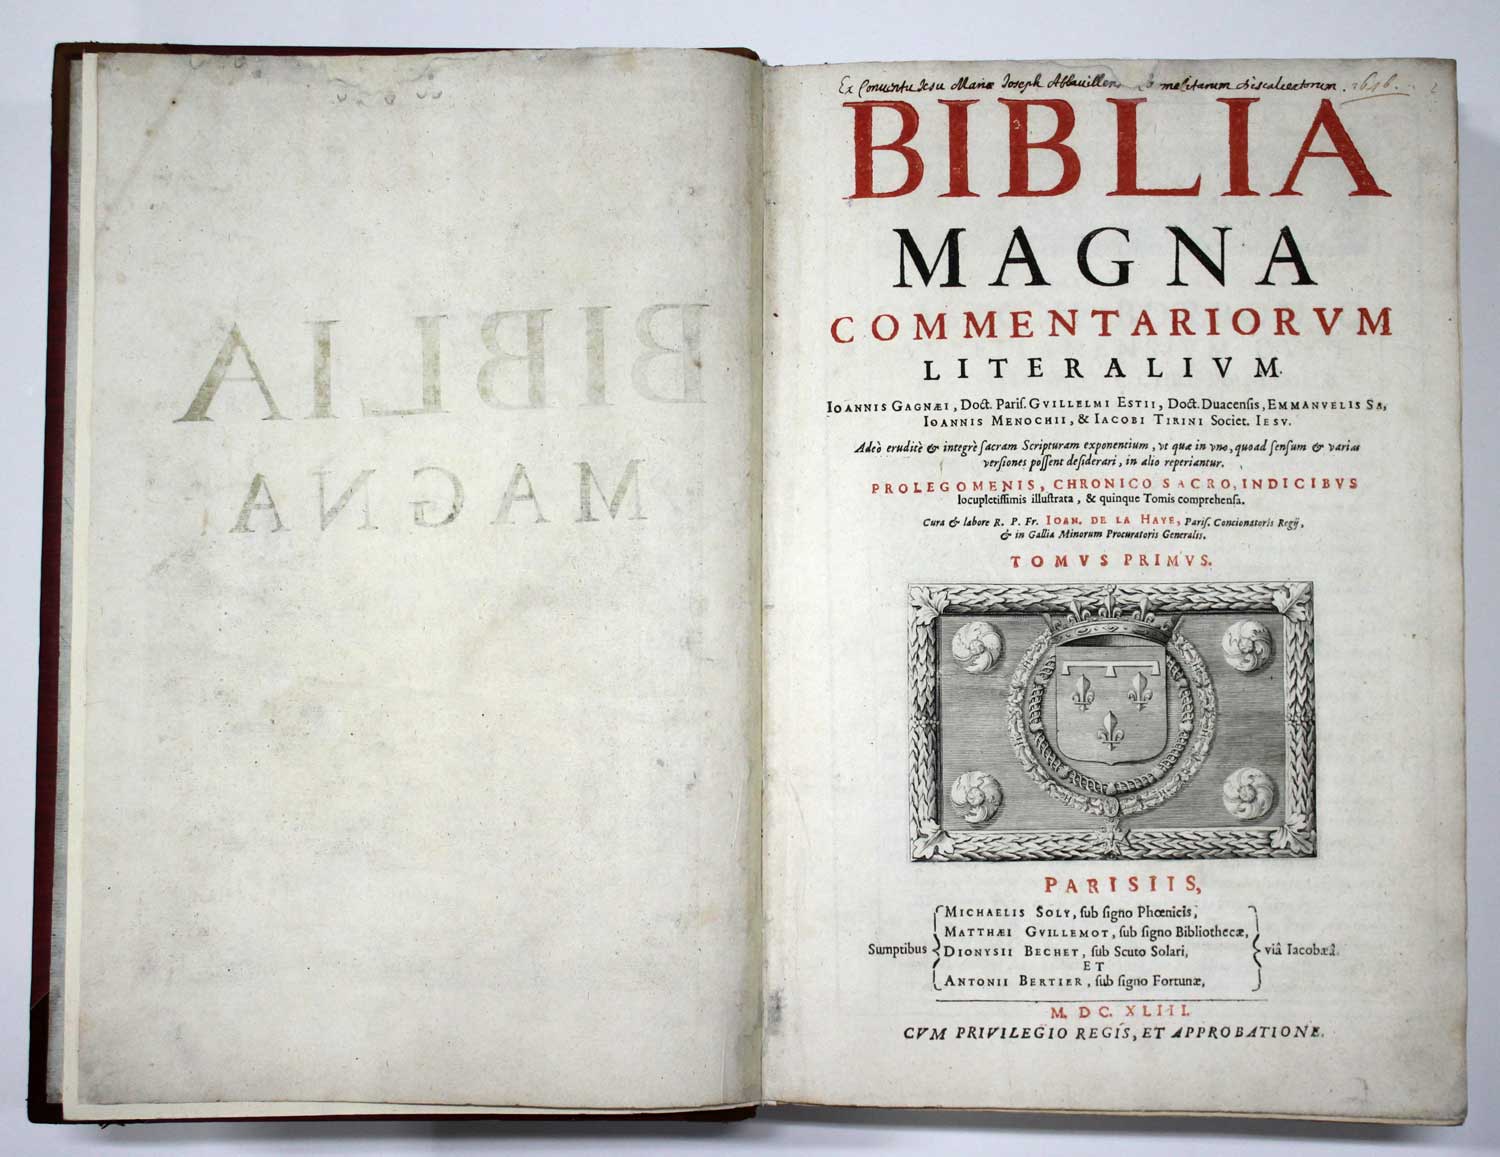 Biblia magna commentariorum literalium Joannis Ganaei, Guillelmi Estii, Emmanuelis Sa, Ioannis - Image 7 of 11